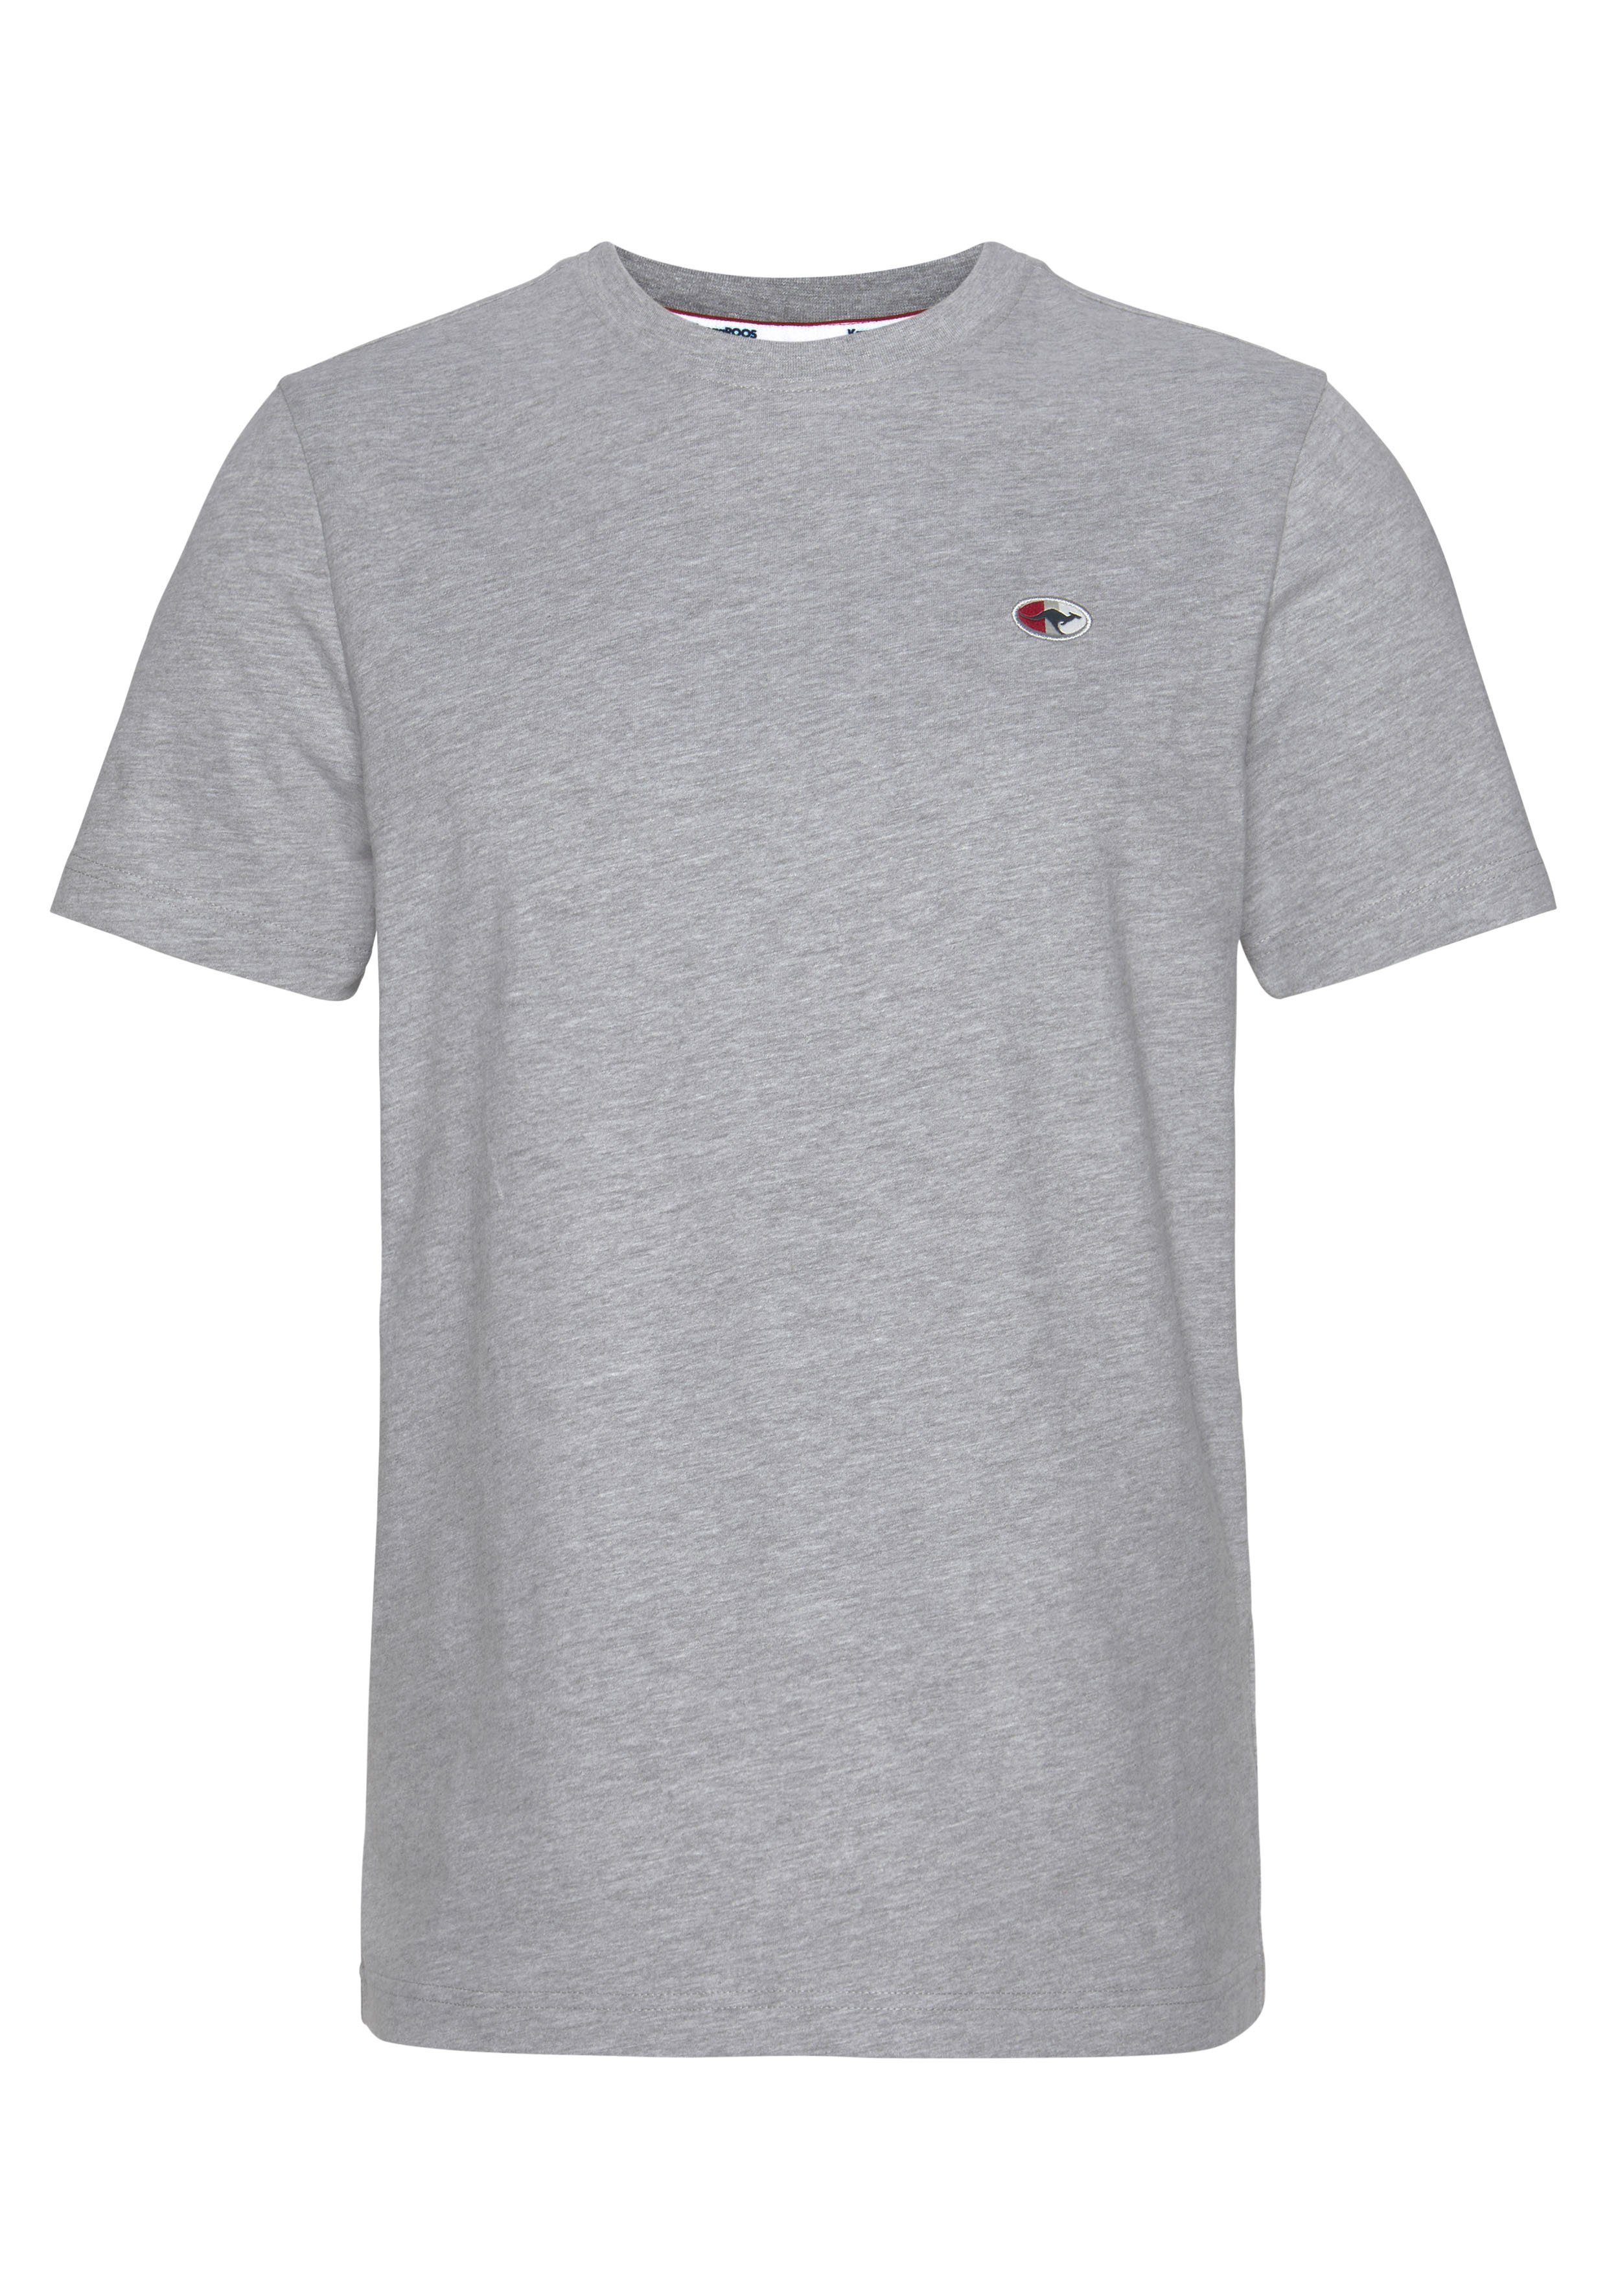 unifarben grau-meliert T-Shirt KangaROOS